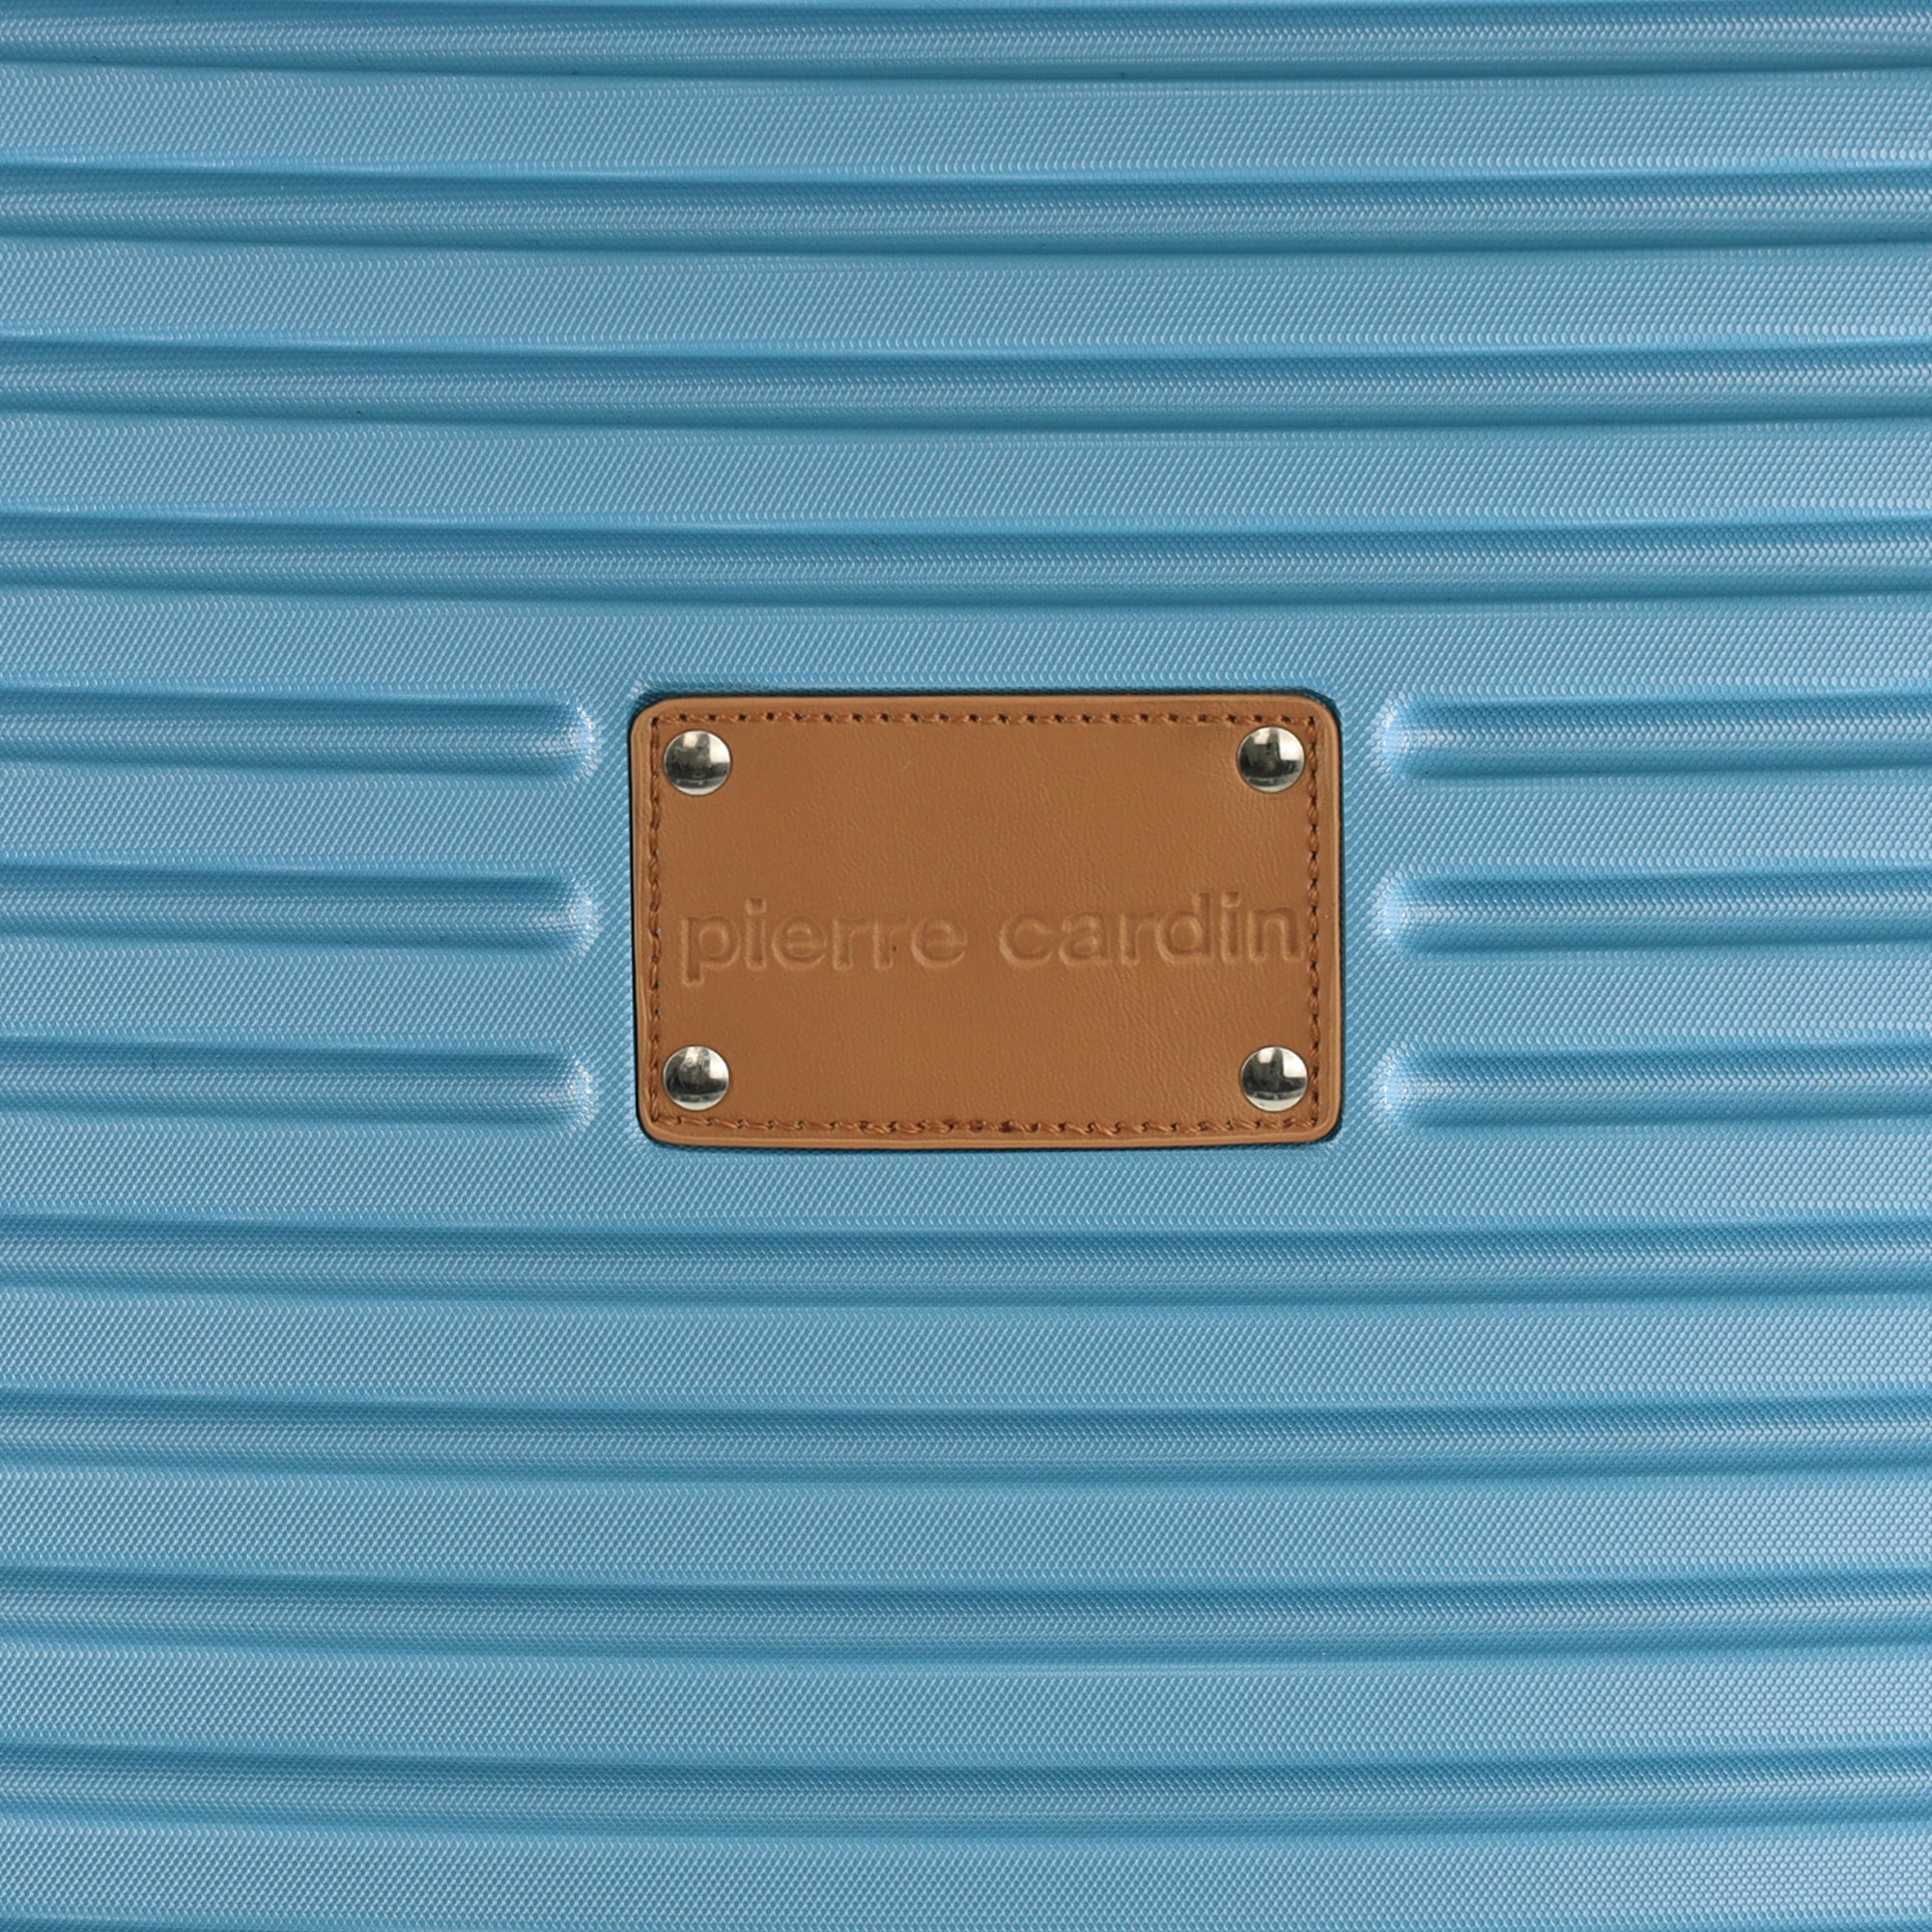 Pierre Cardin 54cm CABIN Hard Shell Suitcase in Blue